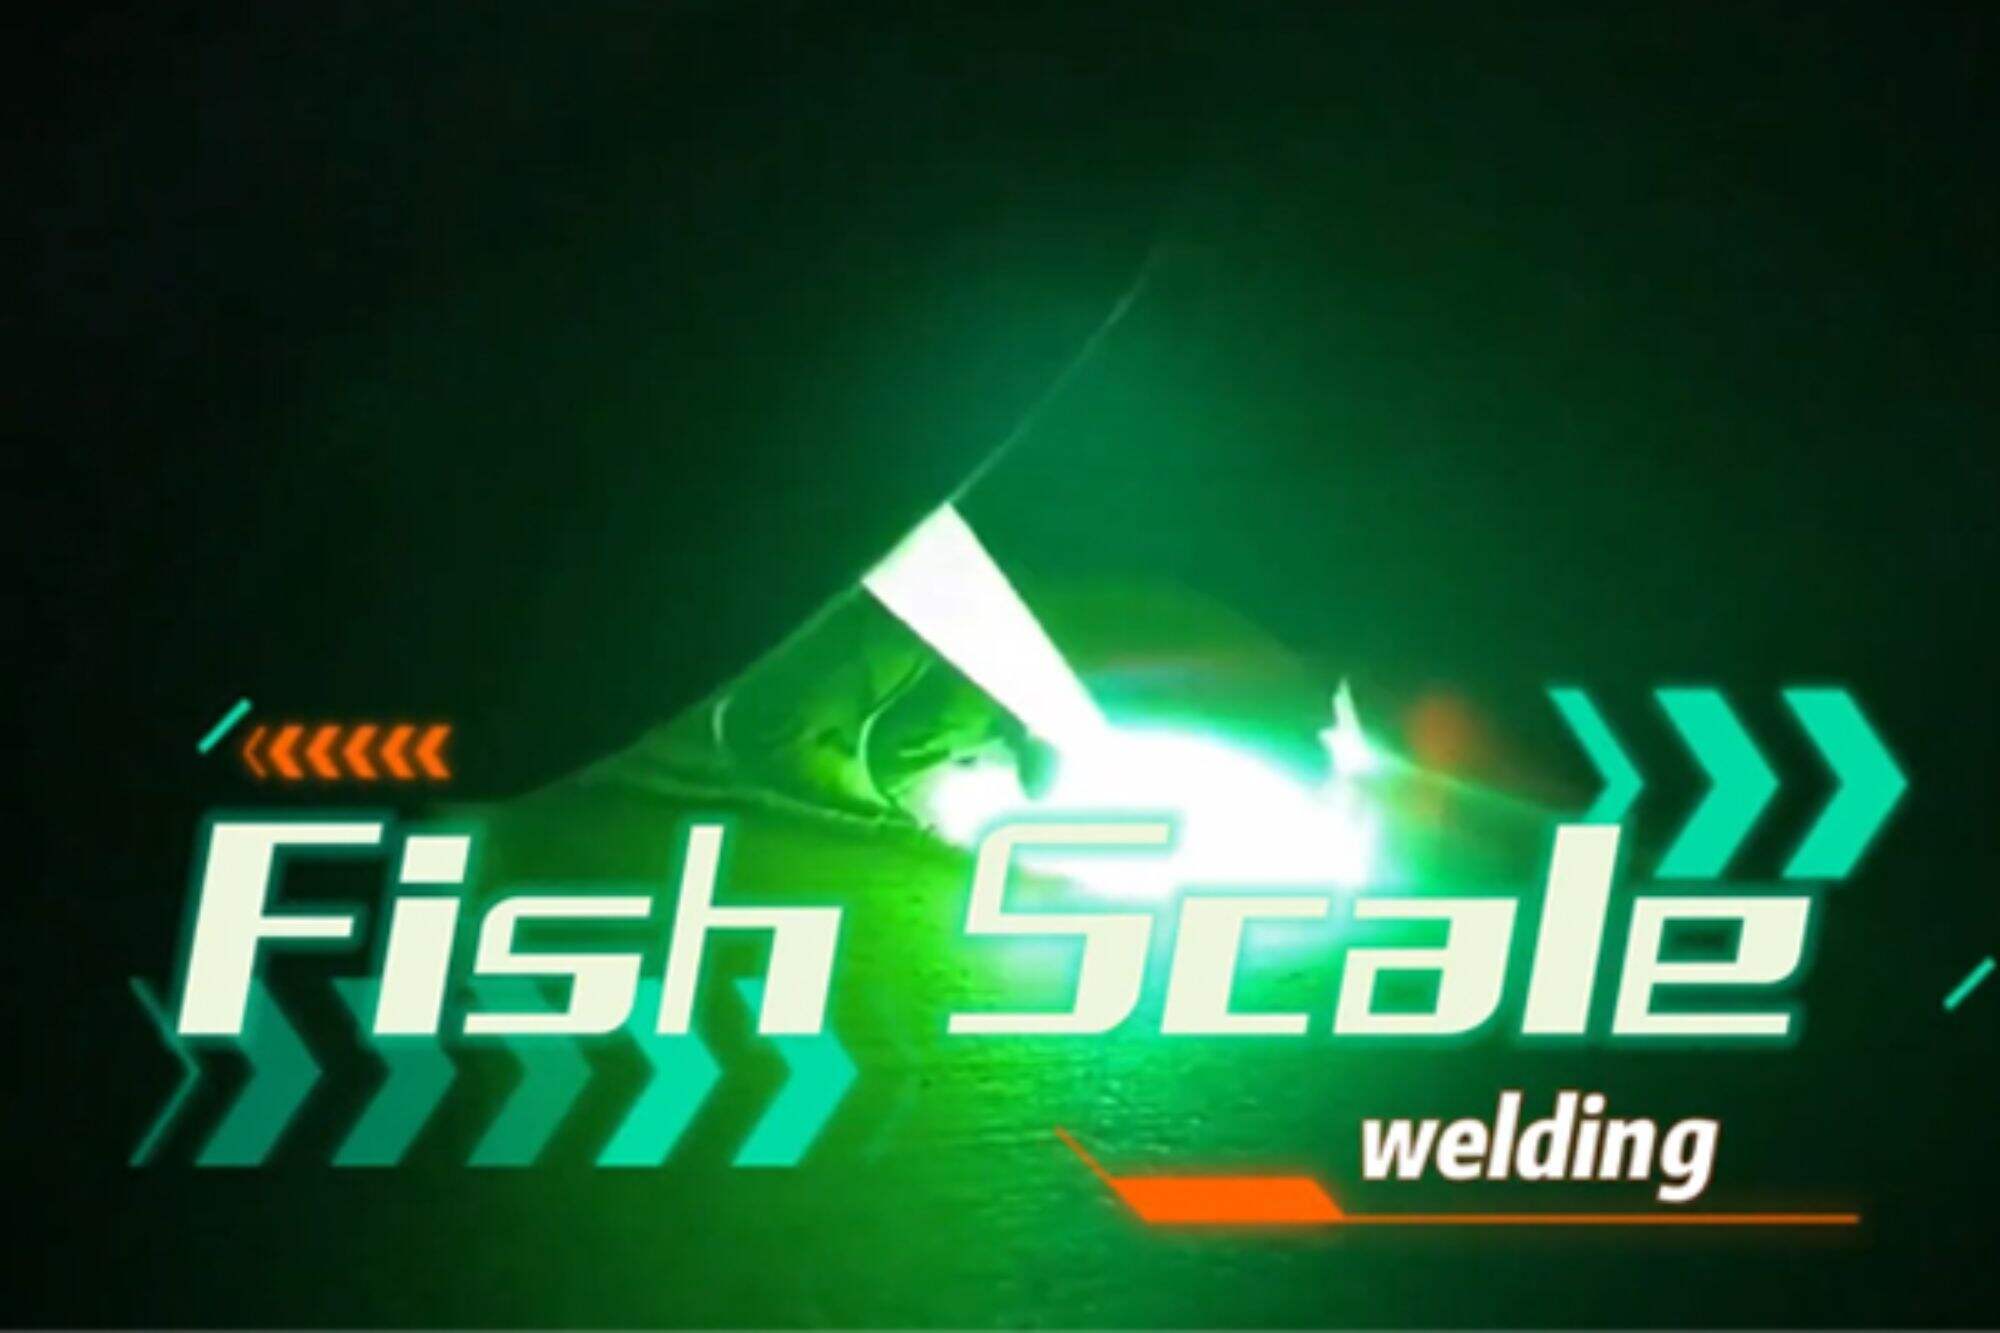 El tipi lazer kaynak makinesi balık pulu kaynak etkisi gösterir ve kullanımı kolaydır